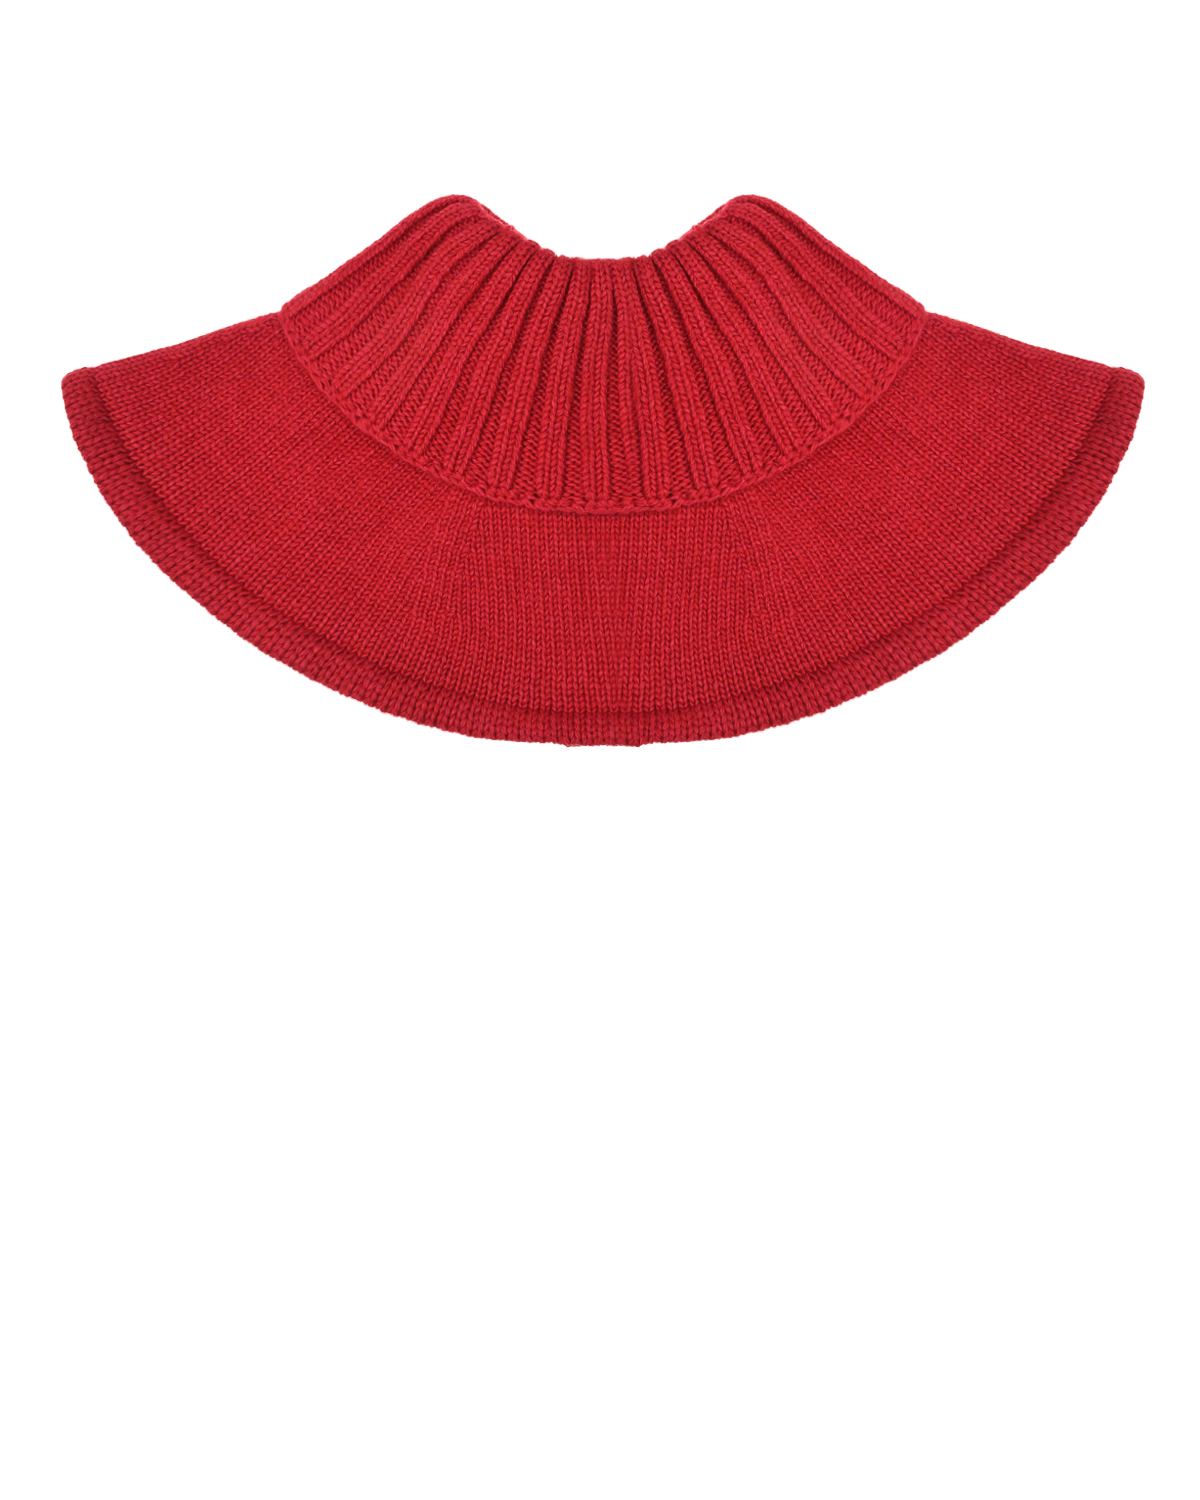 Красный вязаный шарф-горло Chobi детский, размер unica